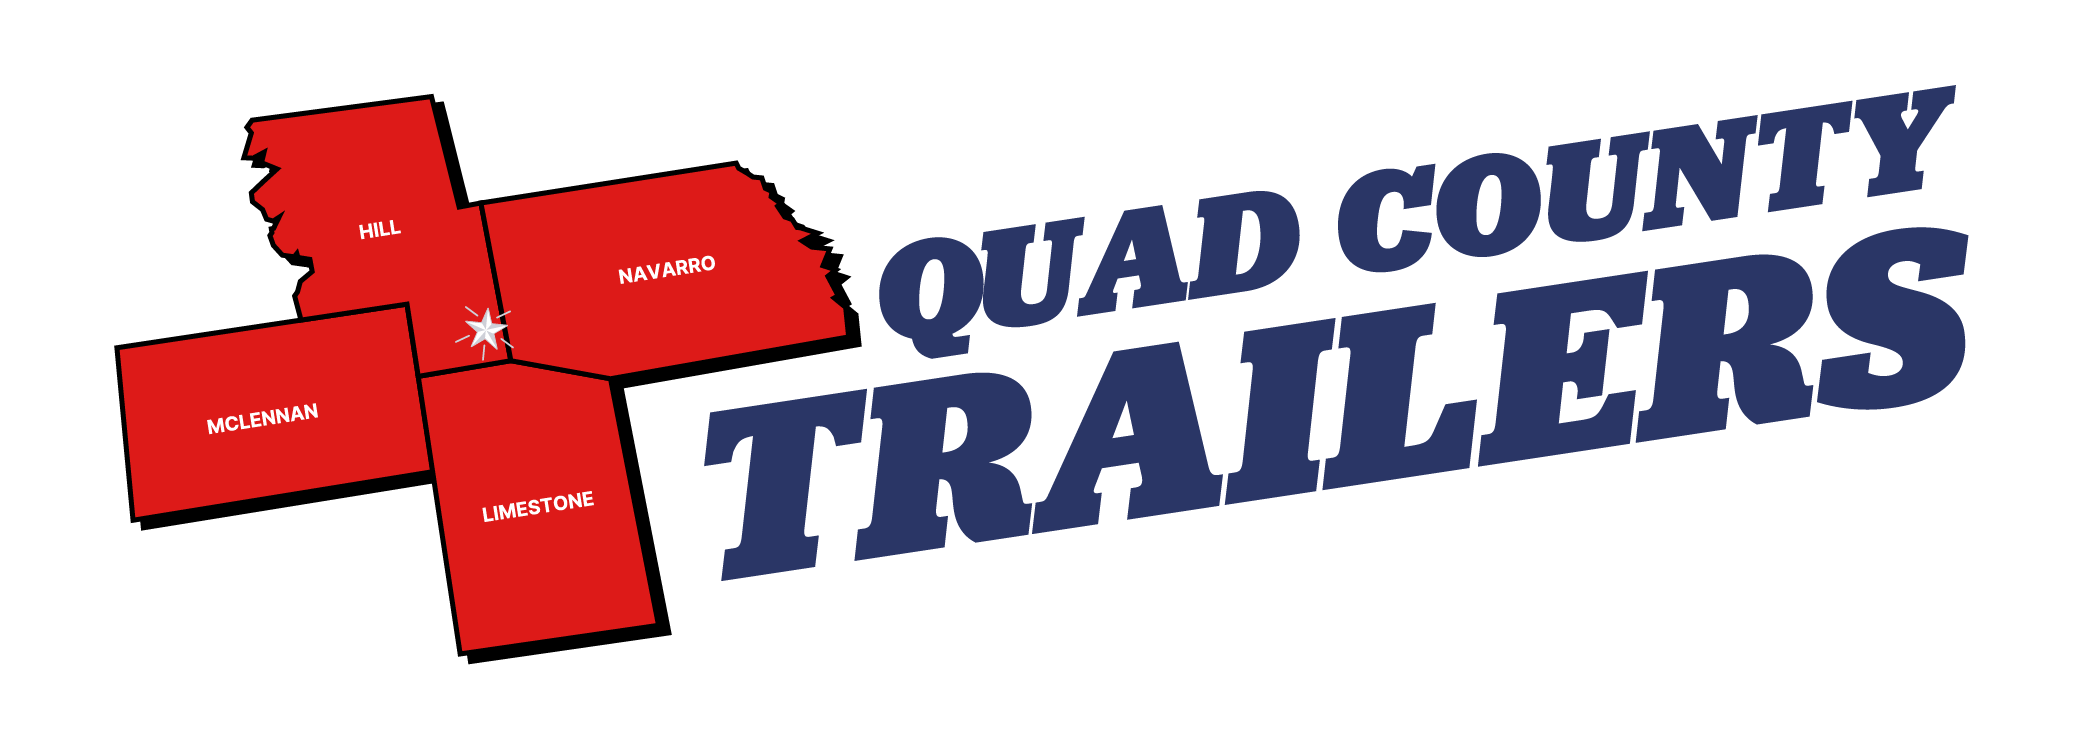 Quad County Trailer Main Logo